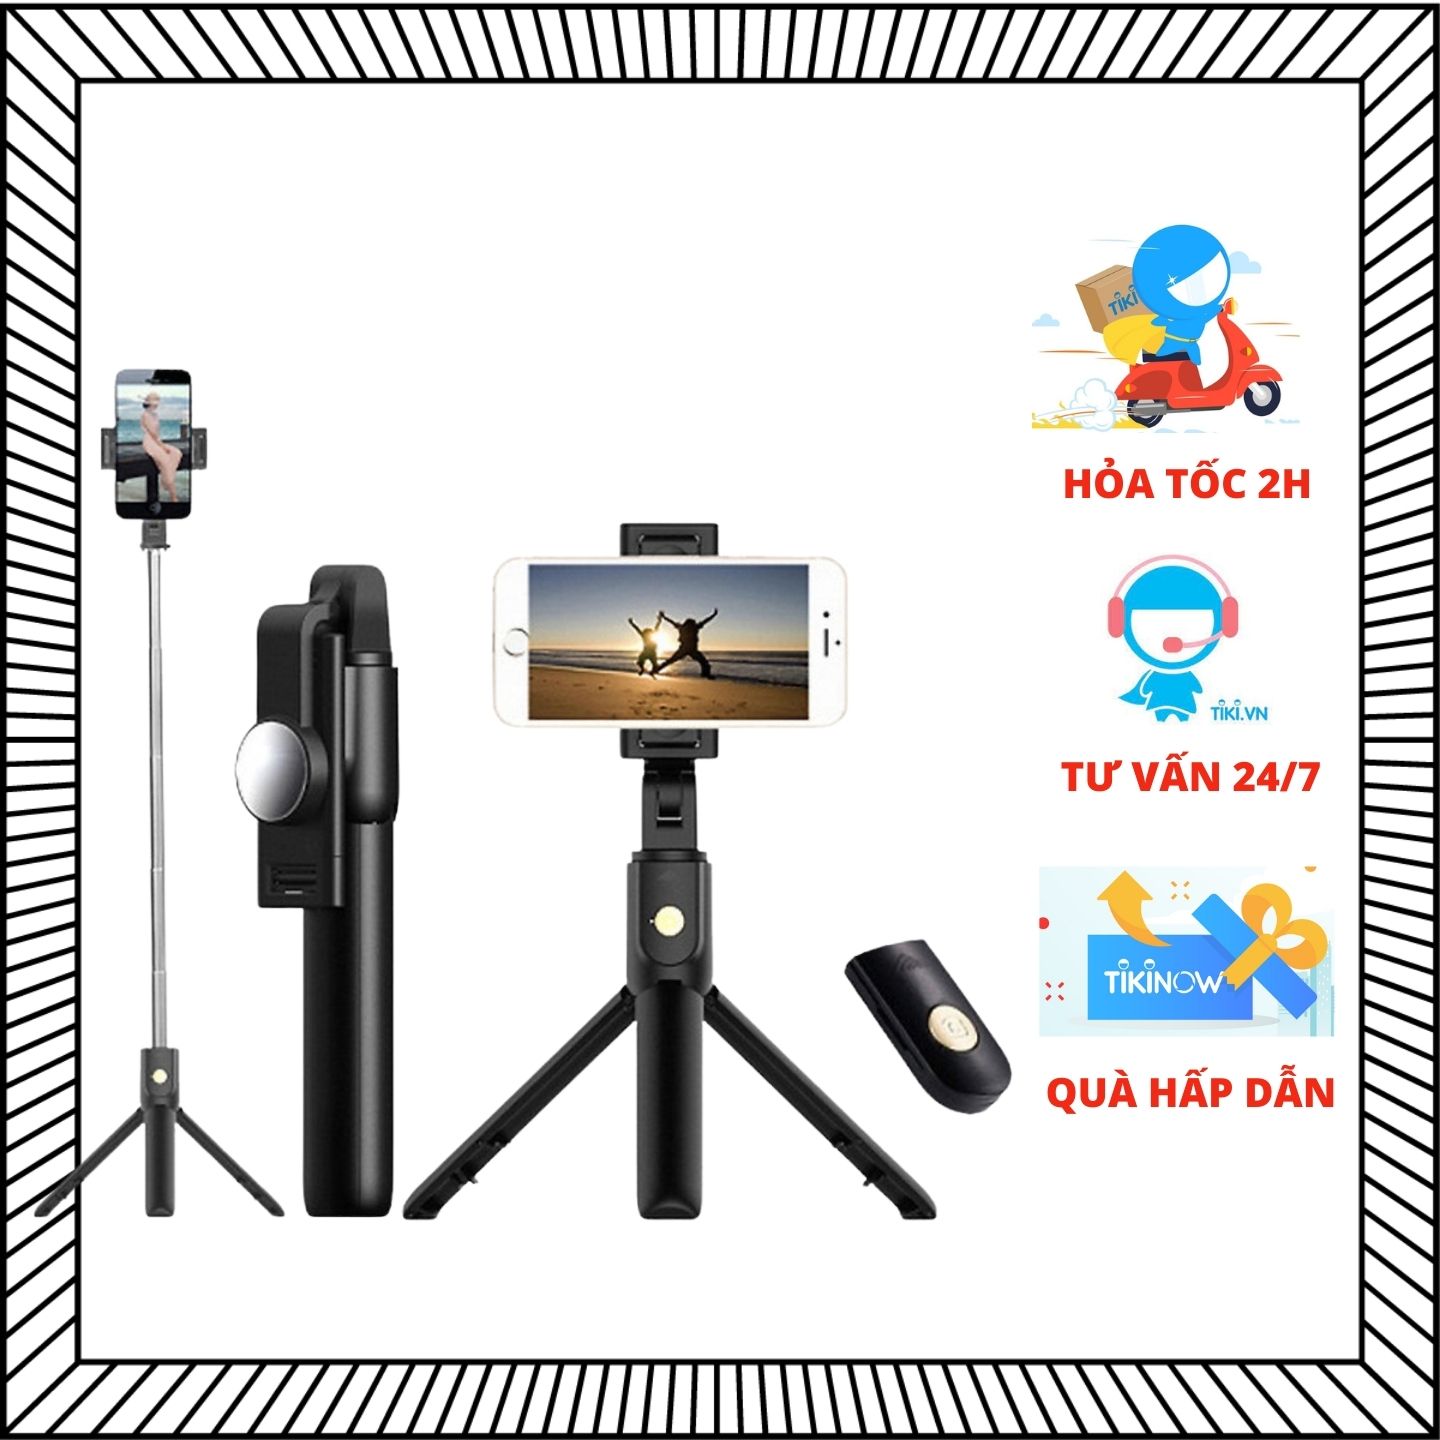 Gậy chụp ảnh selfie, tripod hỗ trợ livestream K10, kết nối bluetooth, xoay 360 độ dành cho Iphone, Samsung...